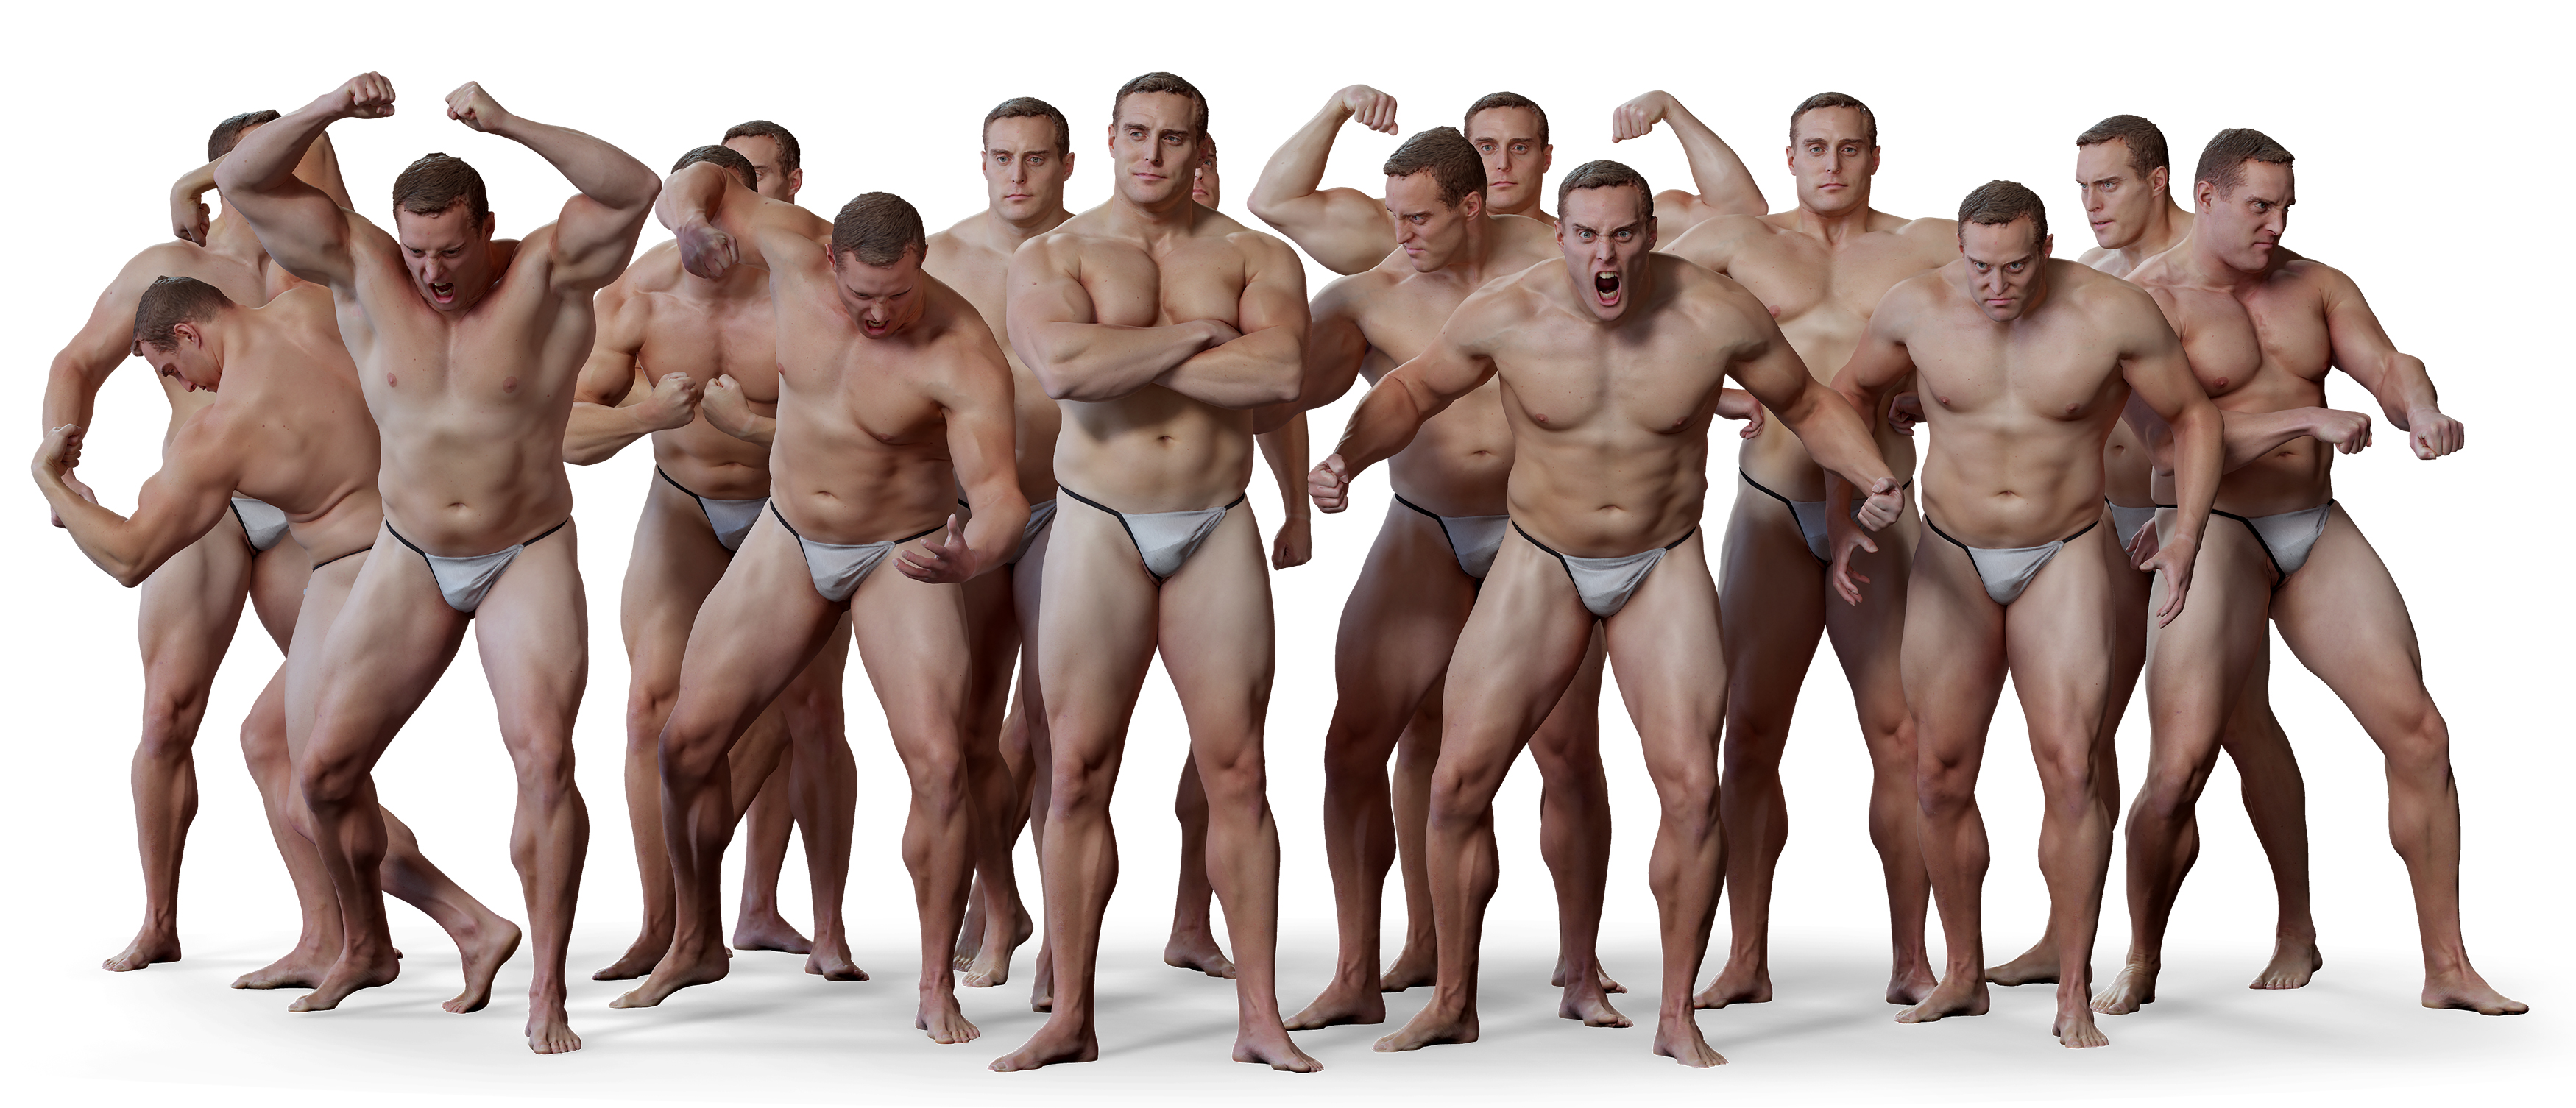 Male body 3d model download